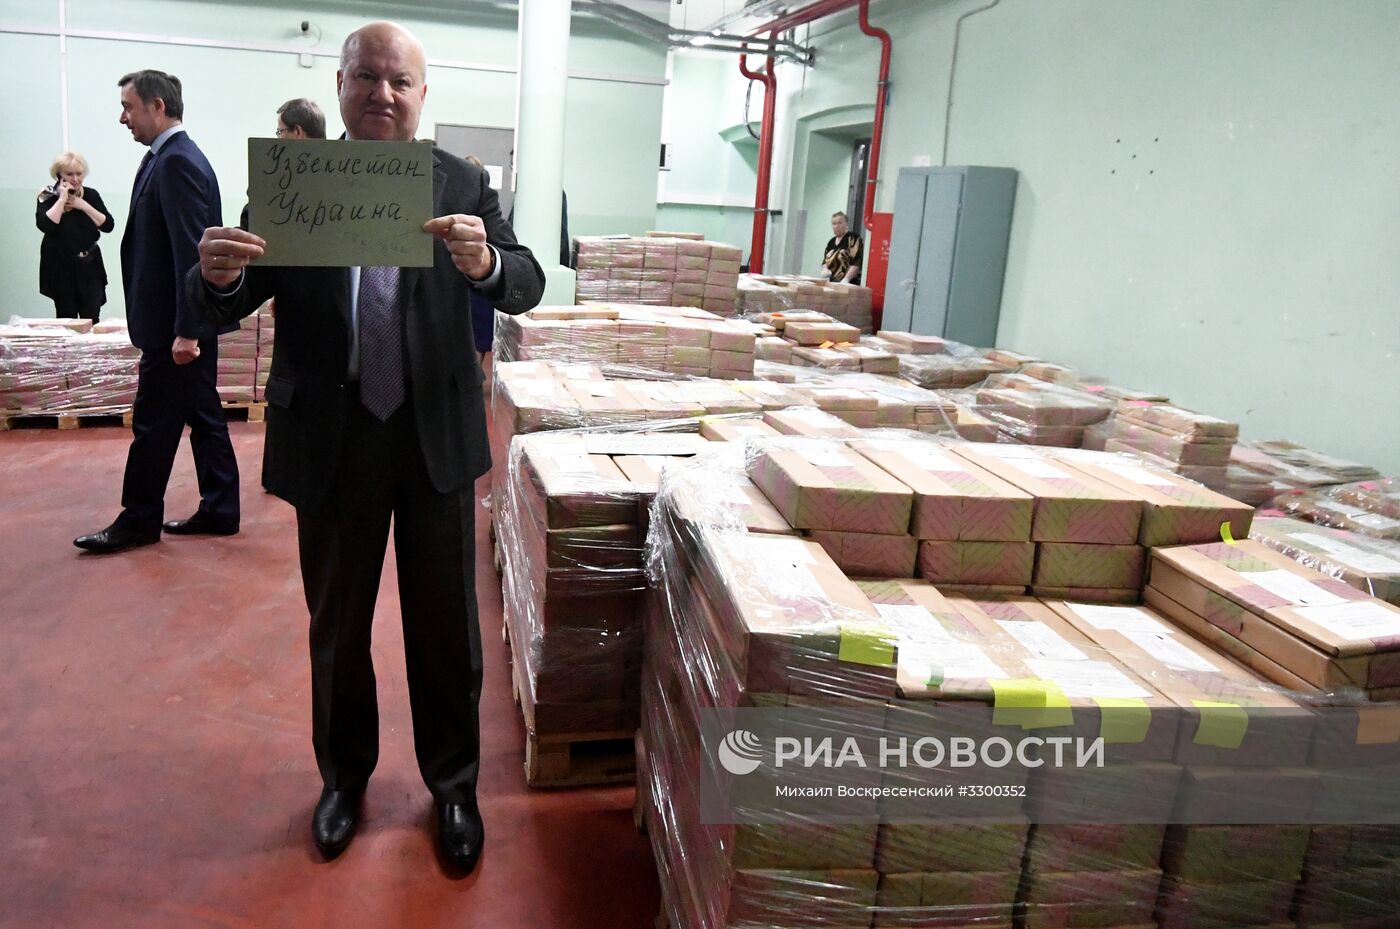 Передача ЦИК РФ бюллетеней для голосования на зарубежных избирательных участках